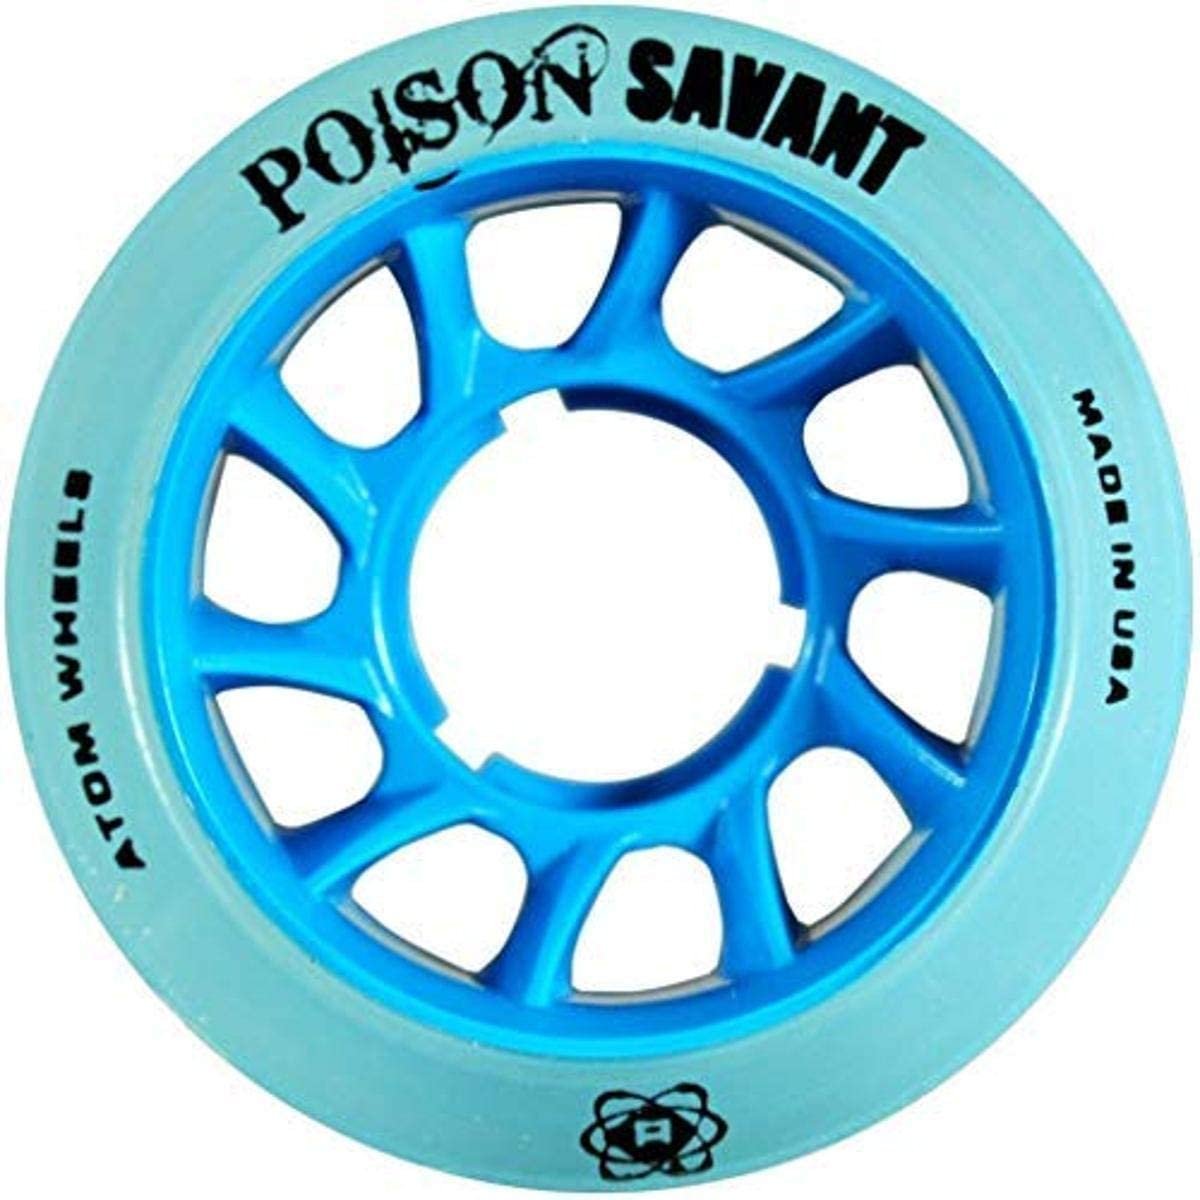 Atom Poison Savant Skate